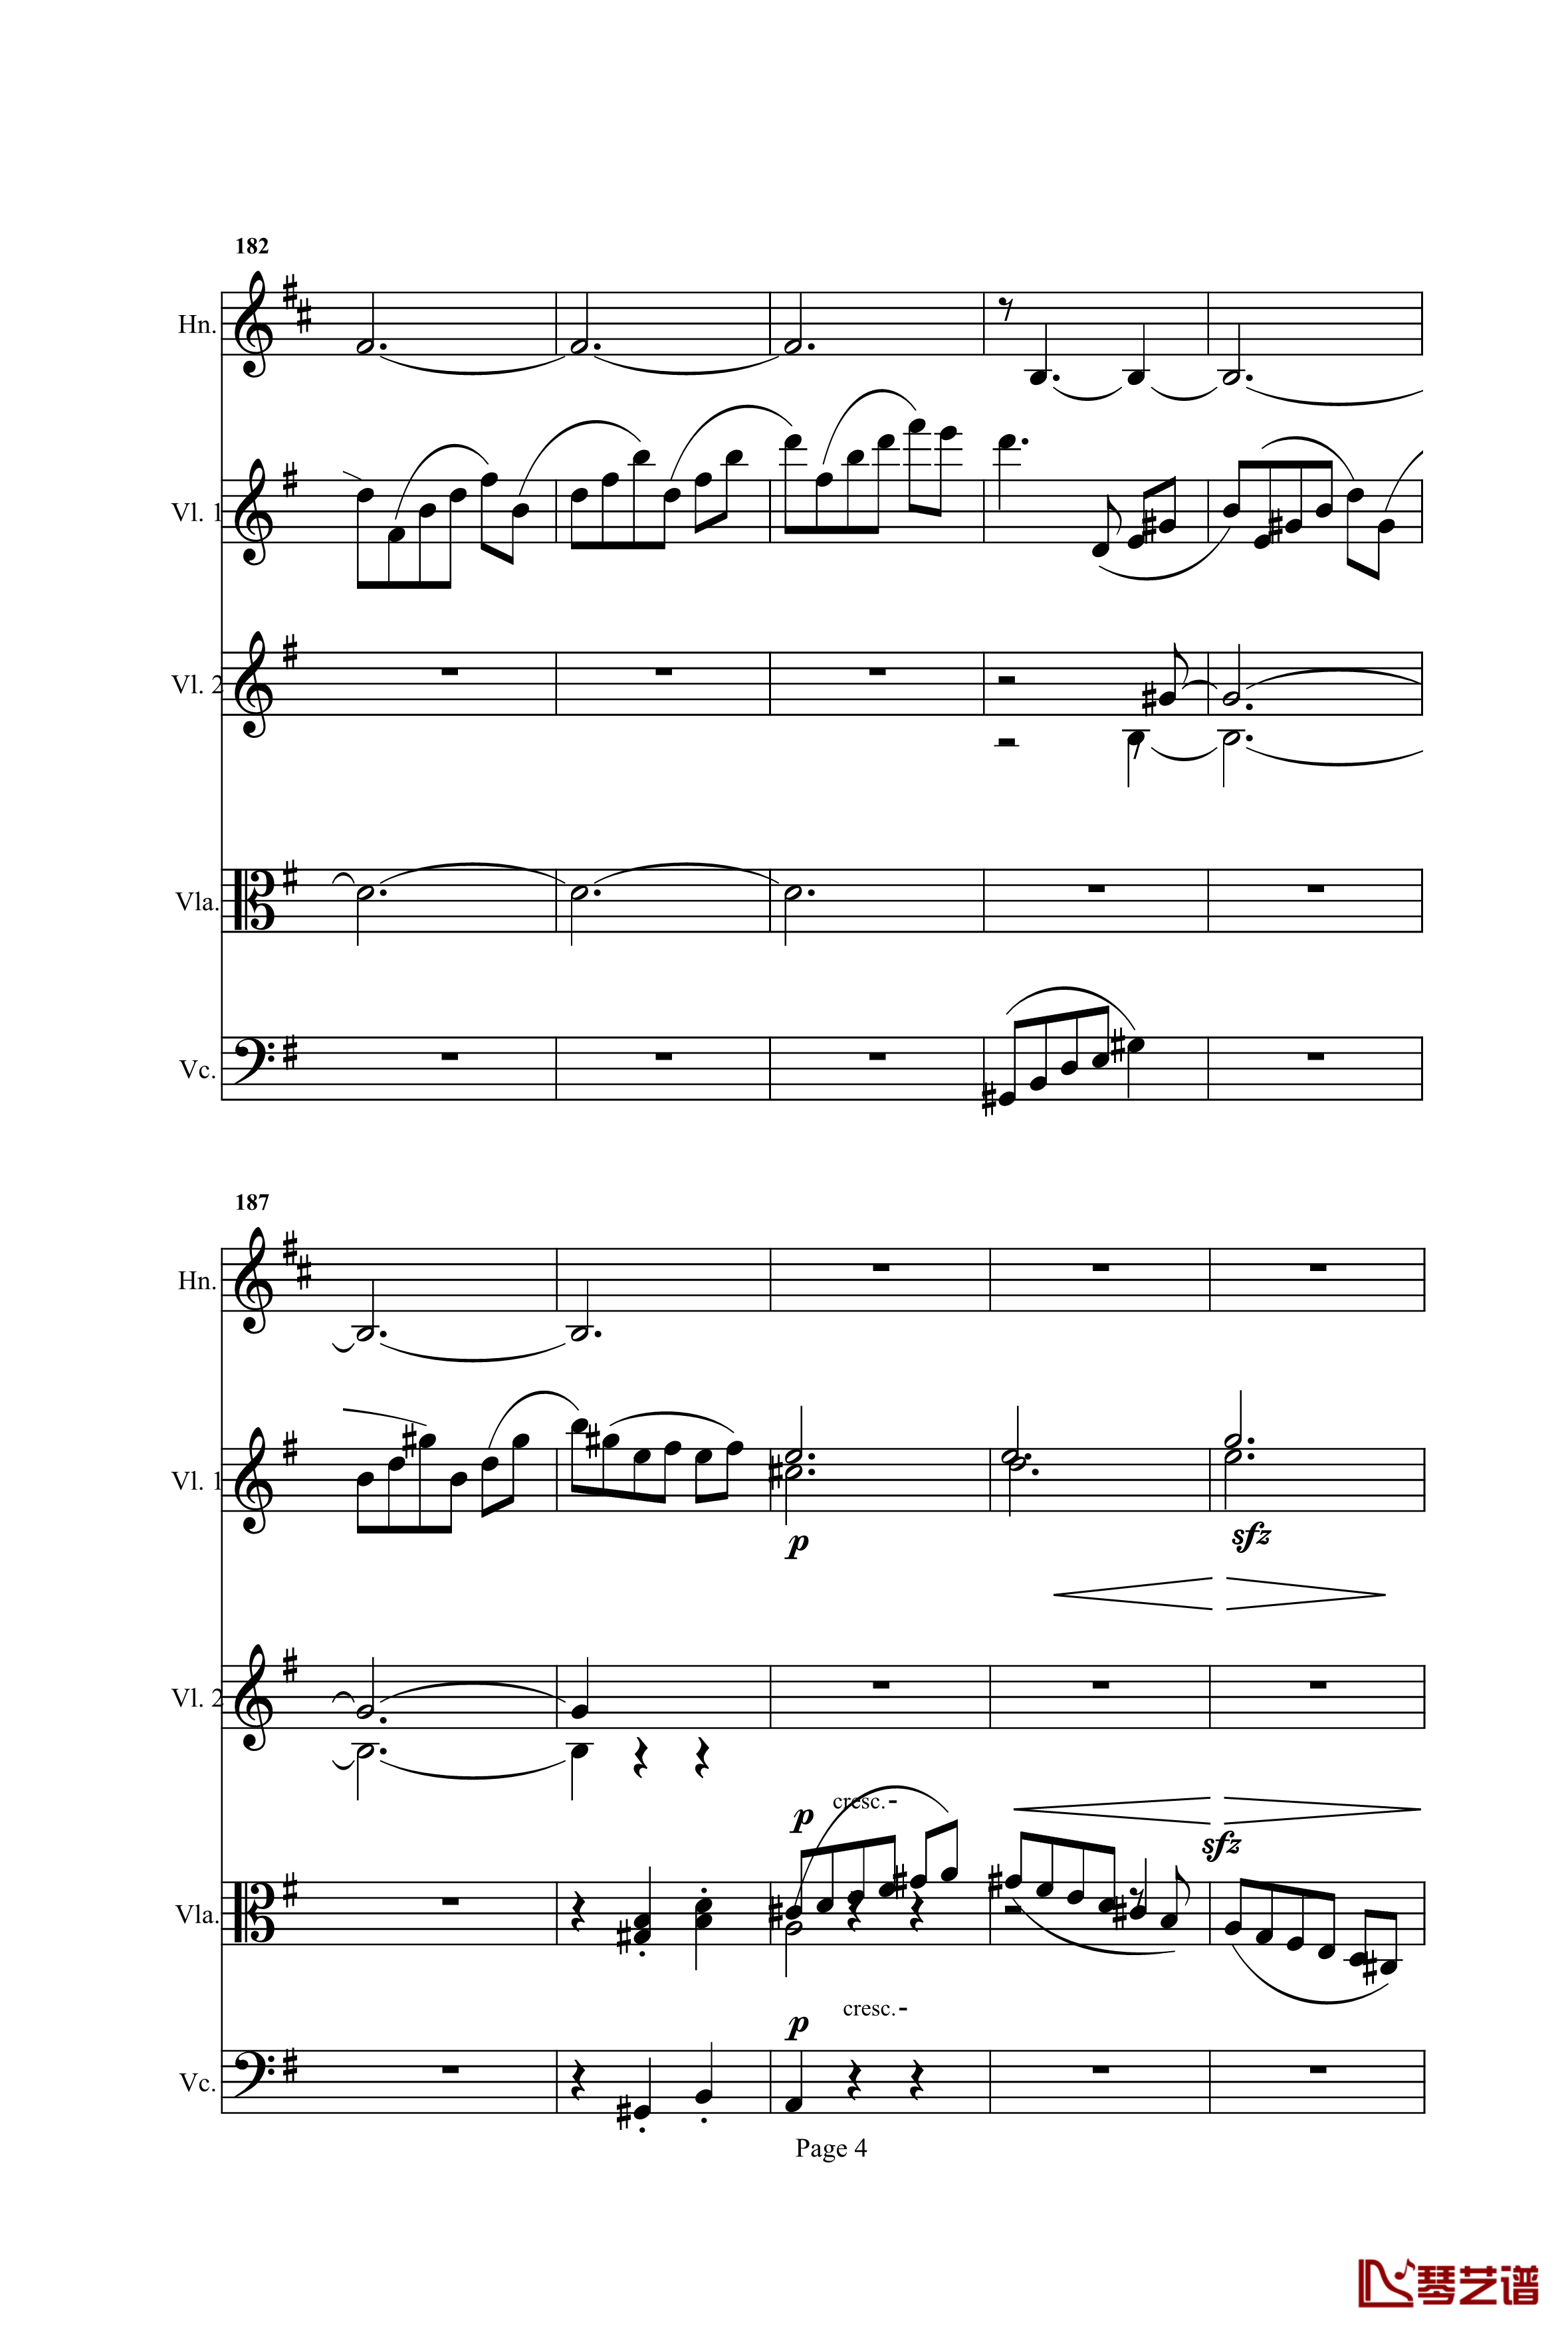 奏鸣曲之交响钢琴谱-第25首-Ⅰ-贝多芬-beethoven4